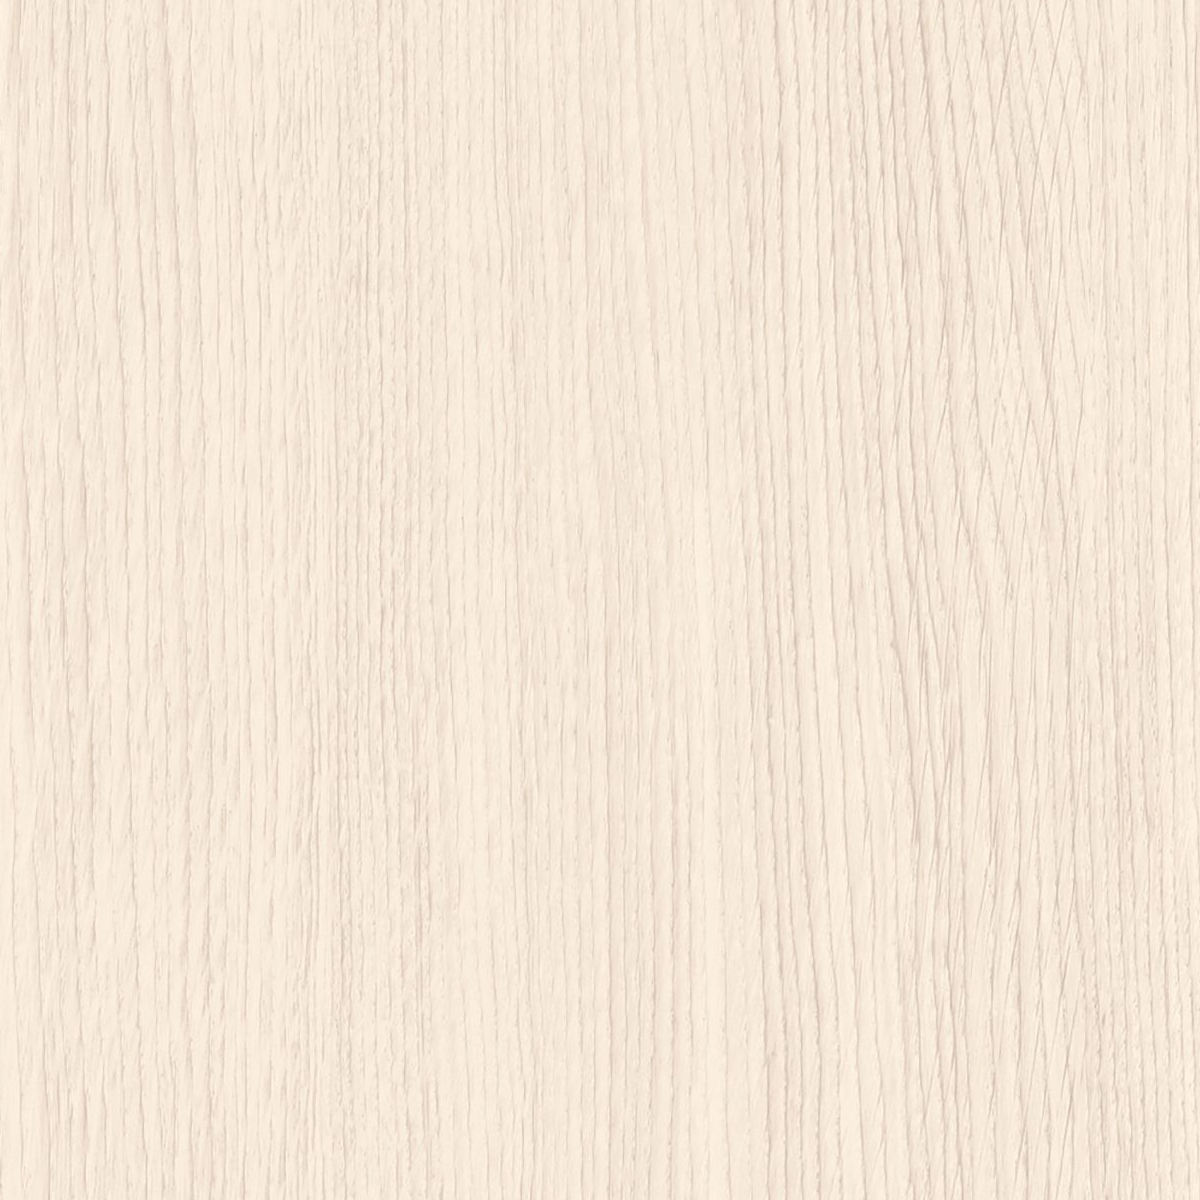 AL29 Pale White Oak